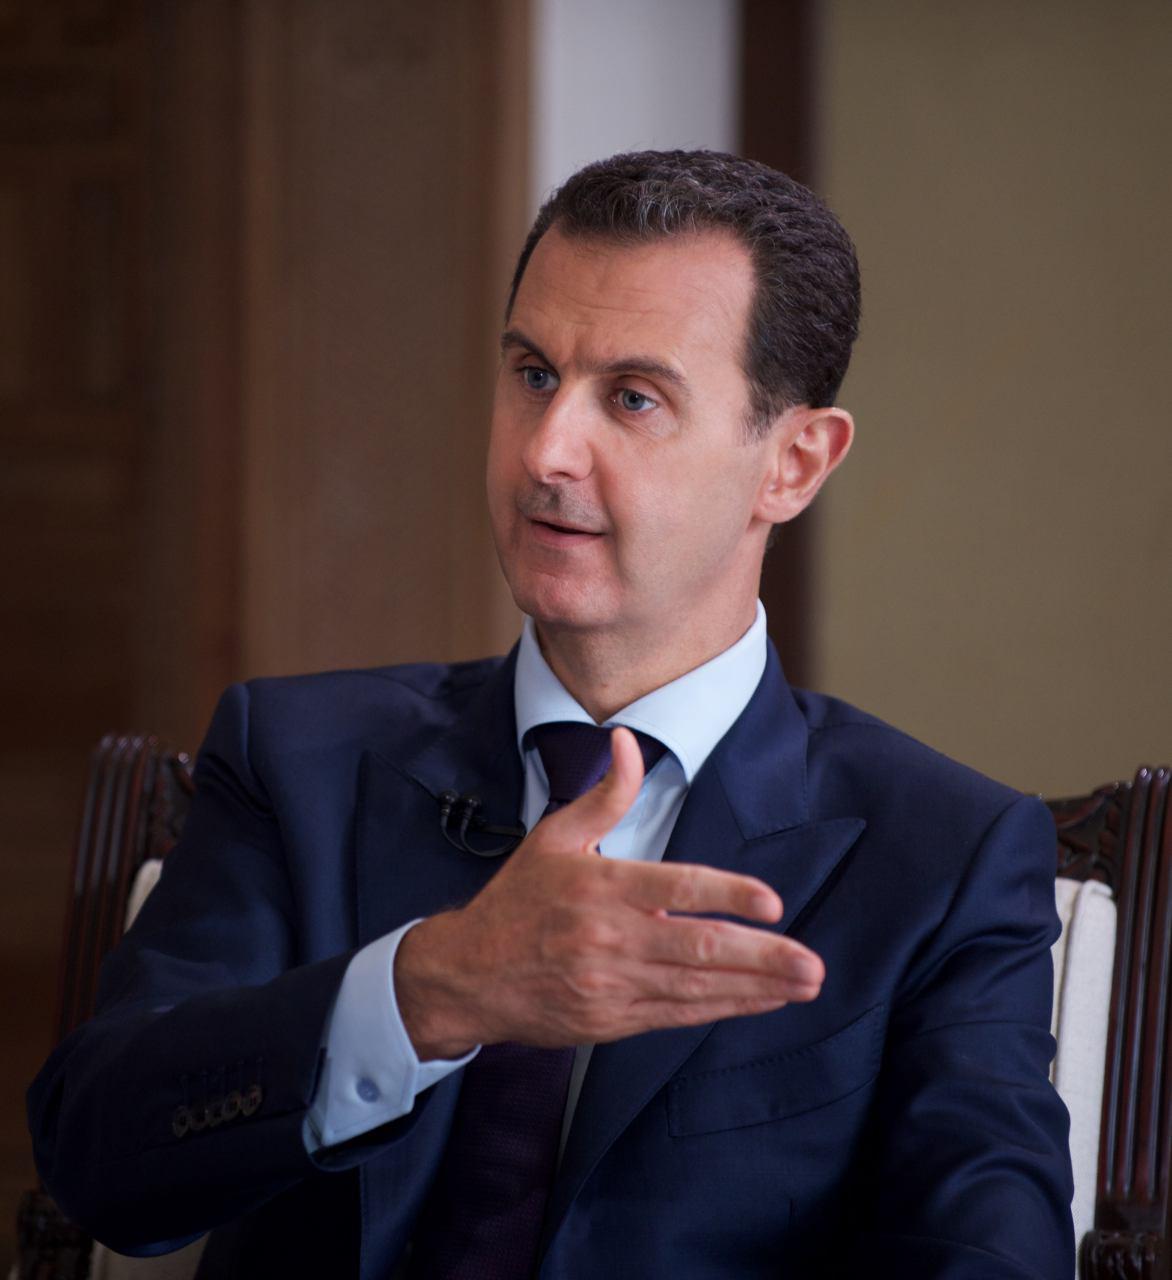 دمشق| بشار الأسد يحدد مواصفات المعارضة التي يريد !